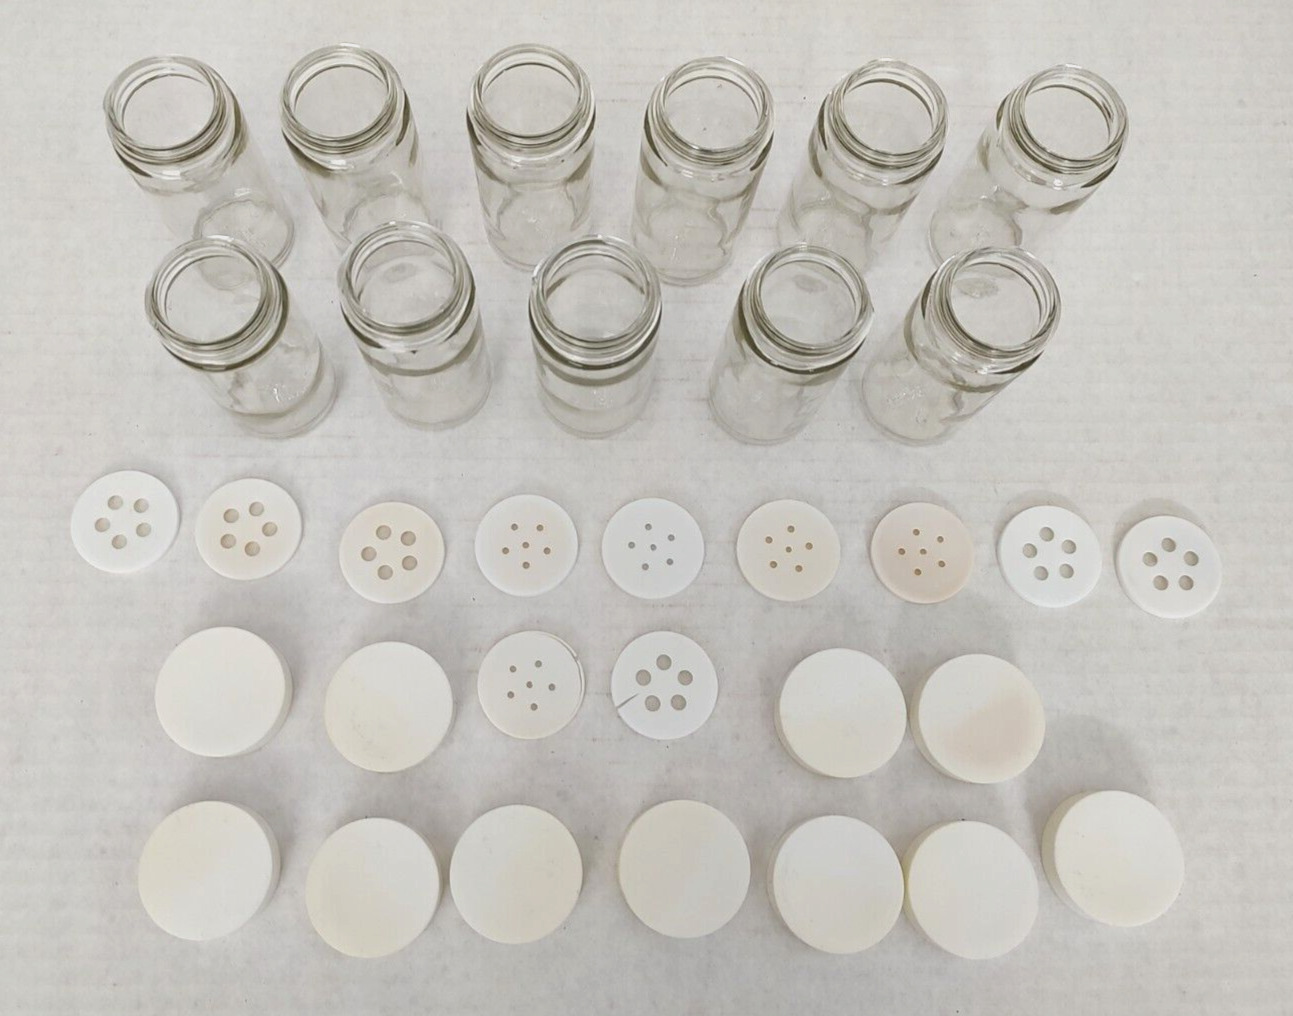 Vintage Copco Glass Spice Bottles/Jars White Lids Set of 11-Eleven-Shaker Tops